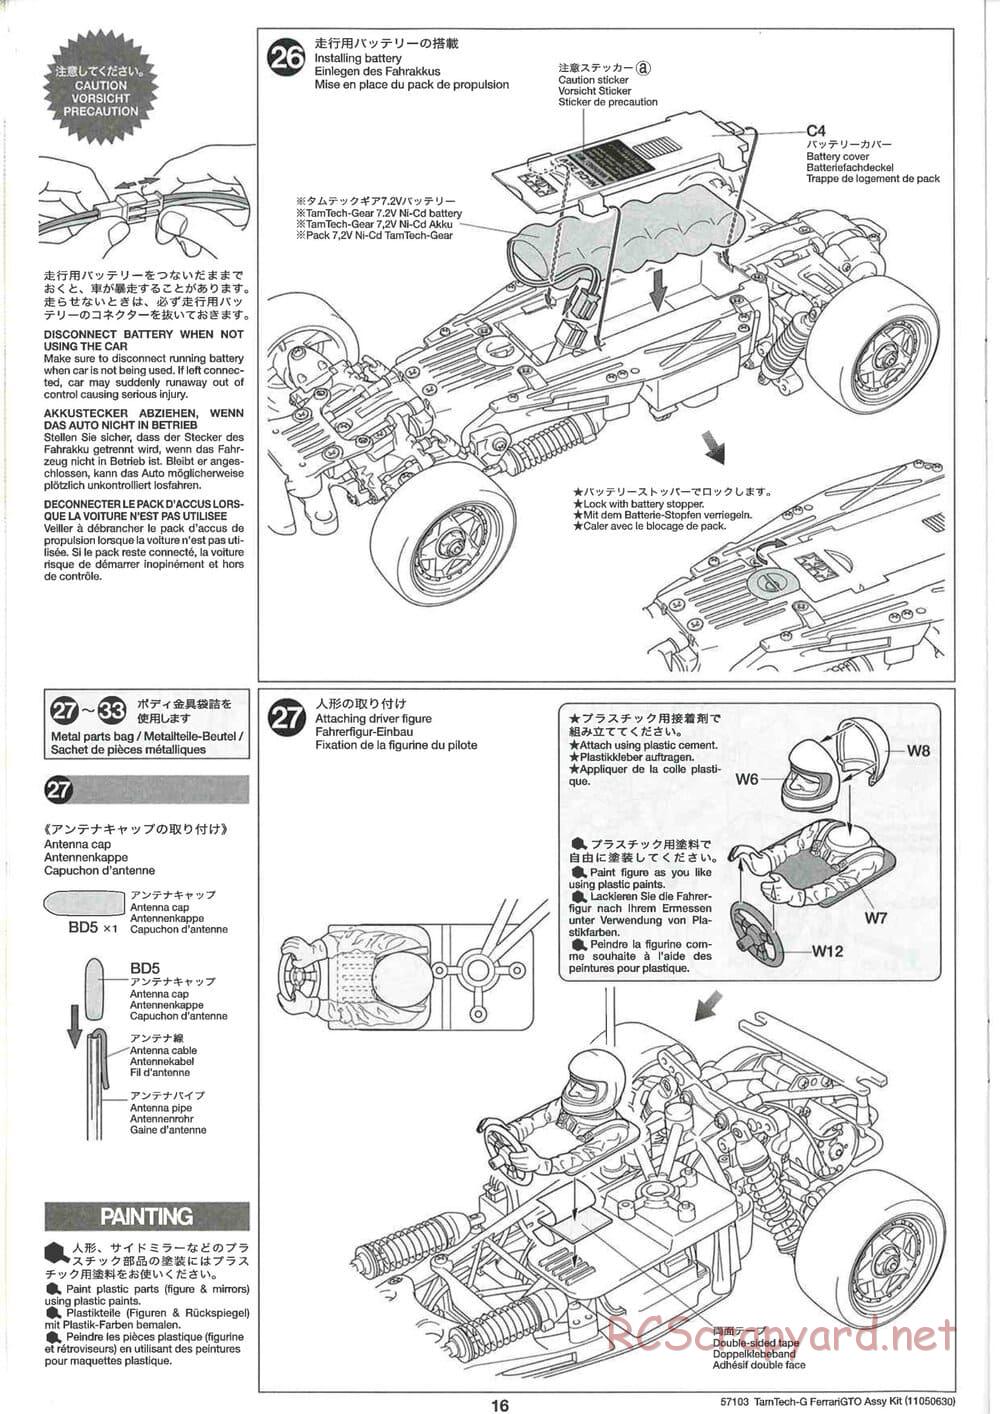 Tamiya - Ferrari 288 GTO - GT-01 Chassis - Manual - Page 16